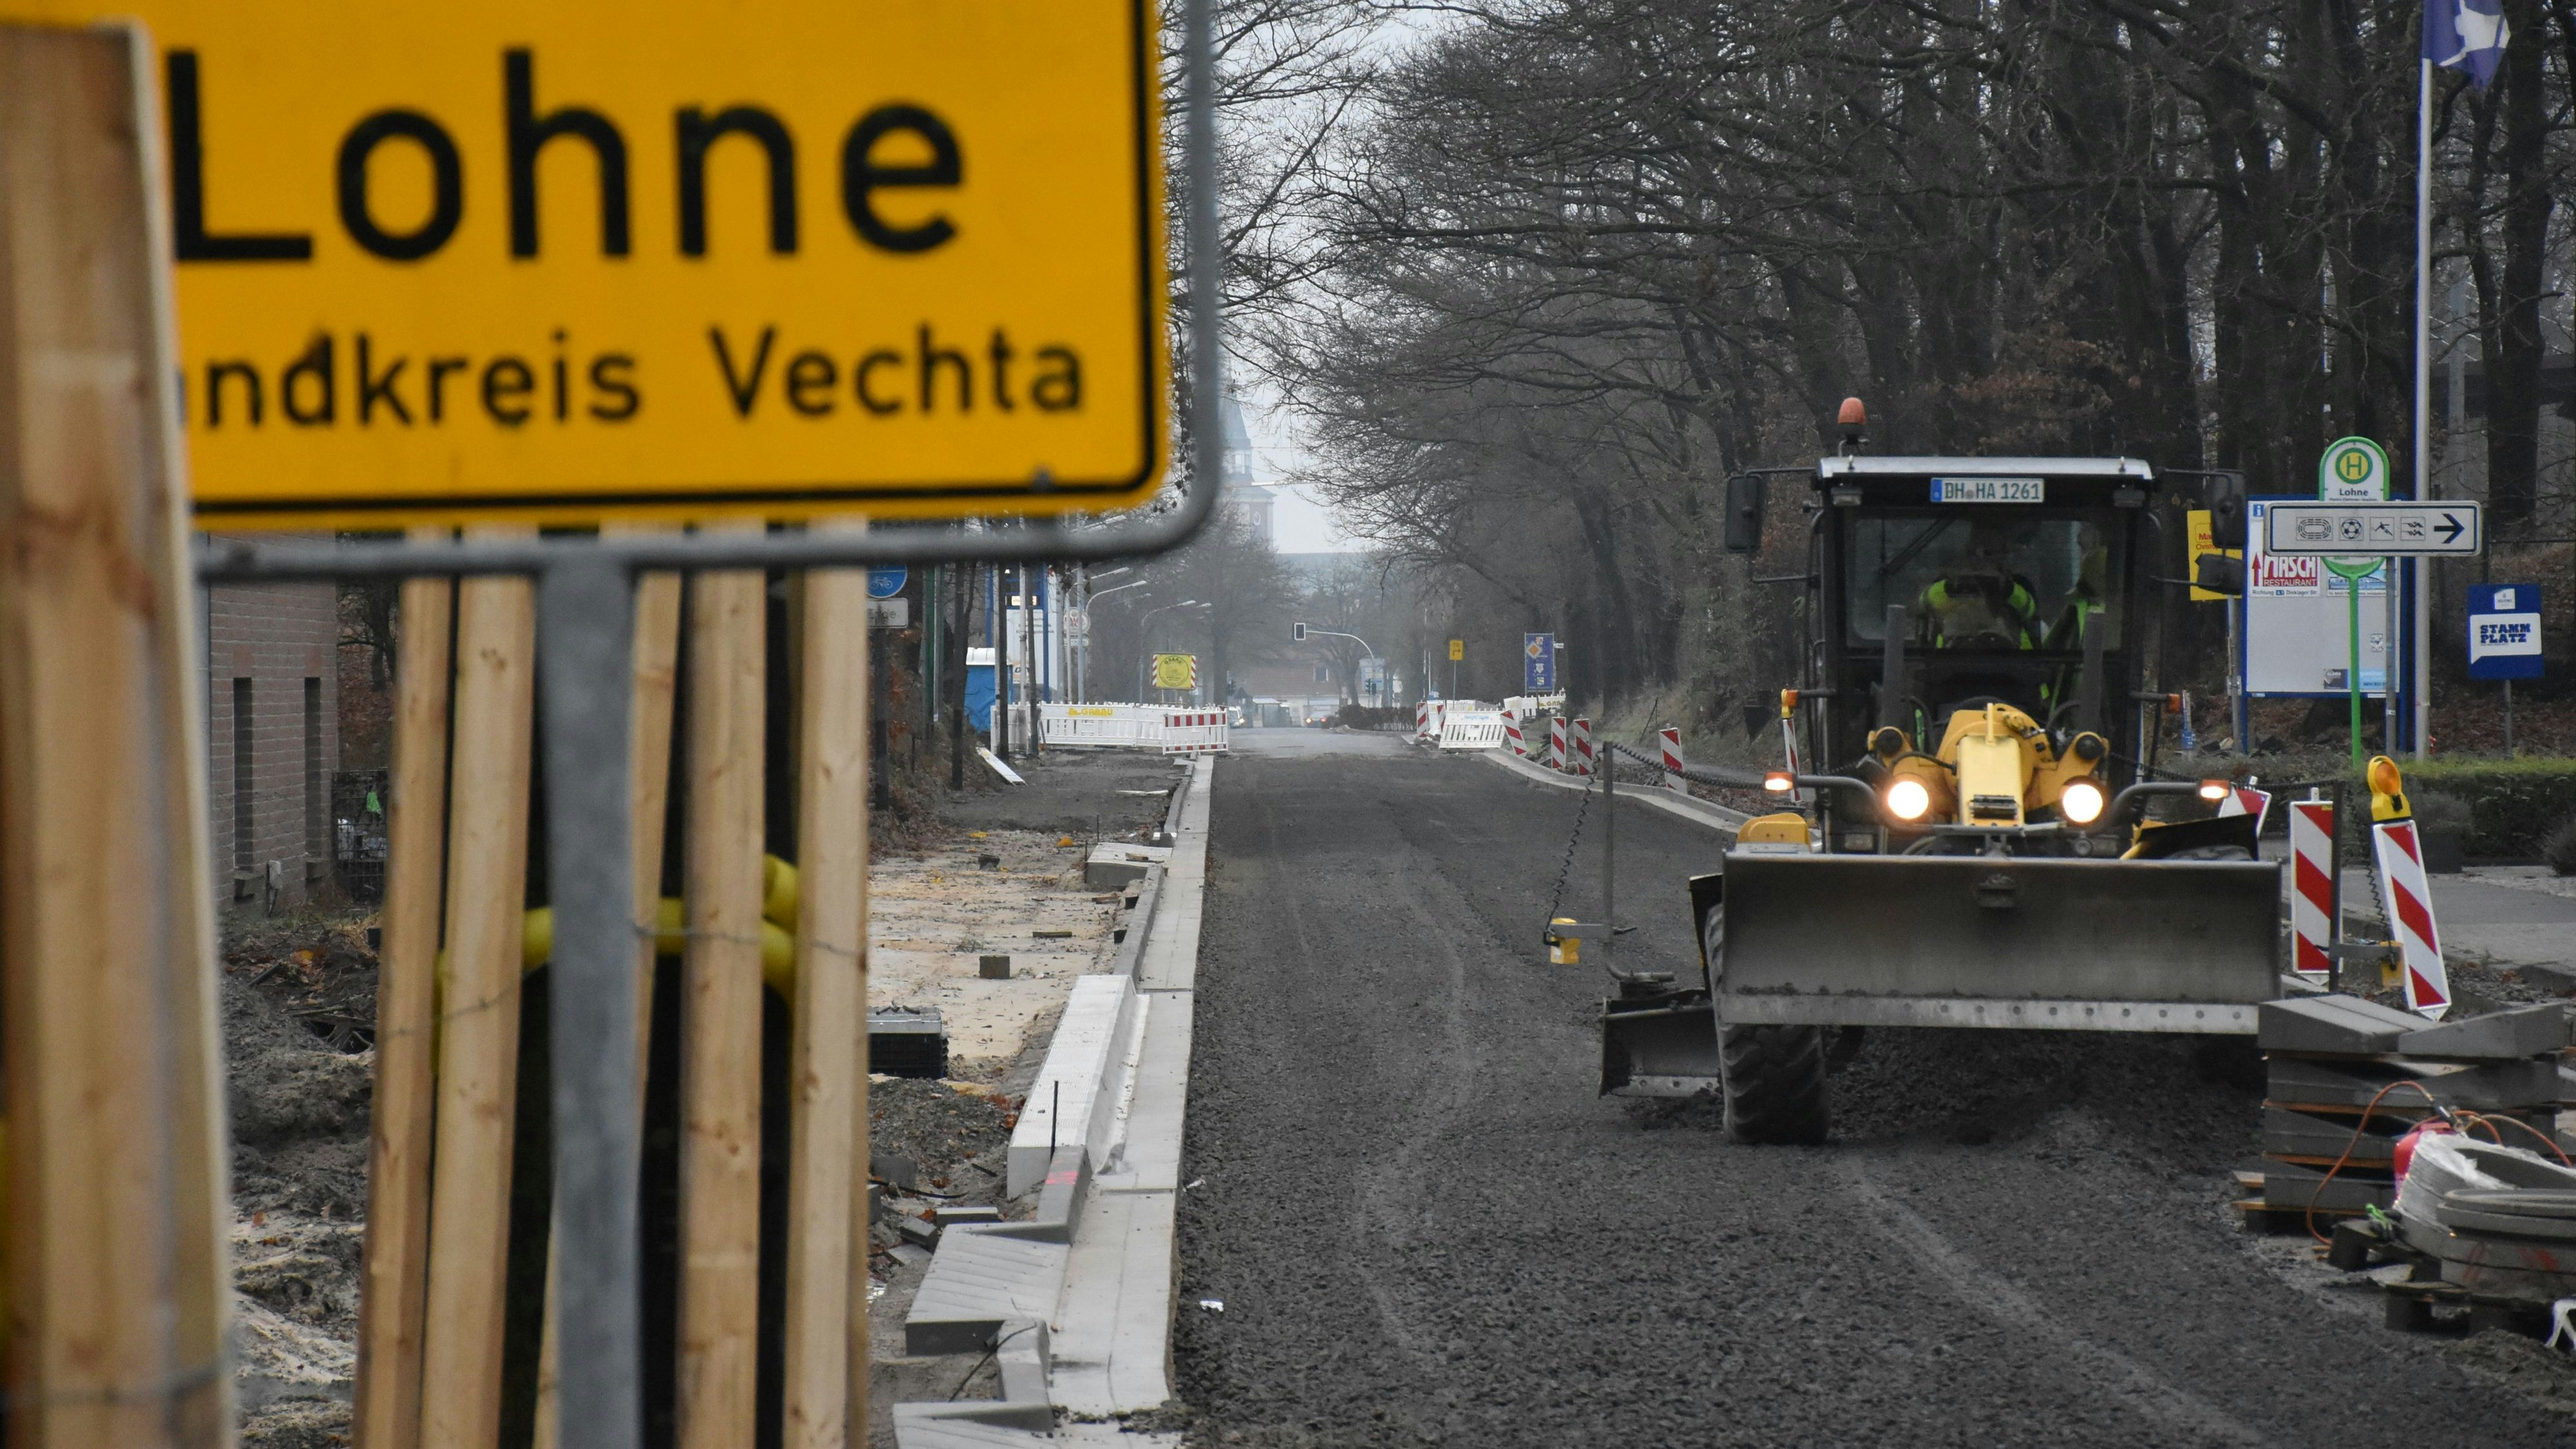 Ein aktuelles Projekt: Für circa 2,8 Millionen Euro lässt die Stadt Lohne derzeit die Steinfelder Straße ausbauen. Die Anlieger sollten bisher etwa 150.000 Euro beisteuern. Falls die Straßenausbaubeiträge wie von der CDU beantragt wegfallen, müsste die Stadt diese Summe selbst aufbringen. Foto: Timphaus